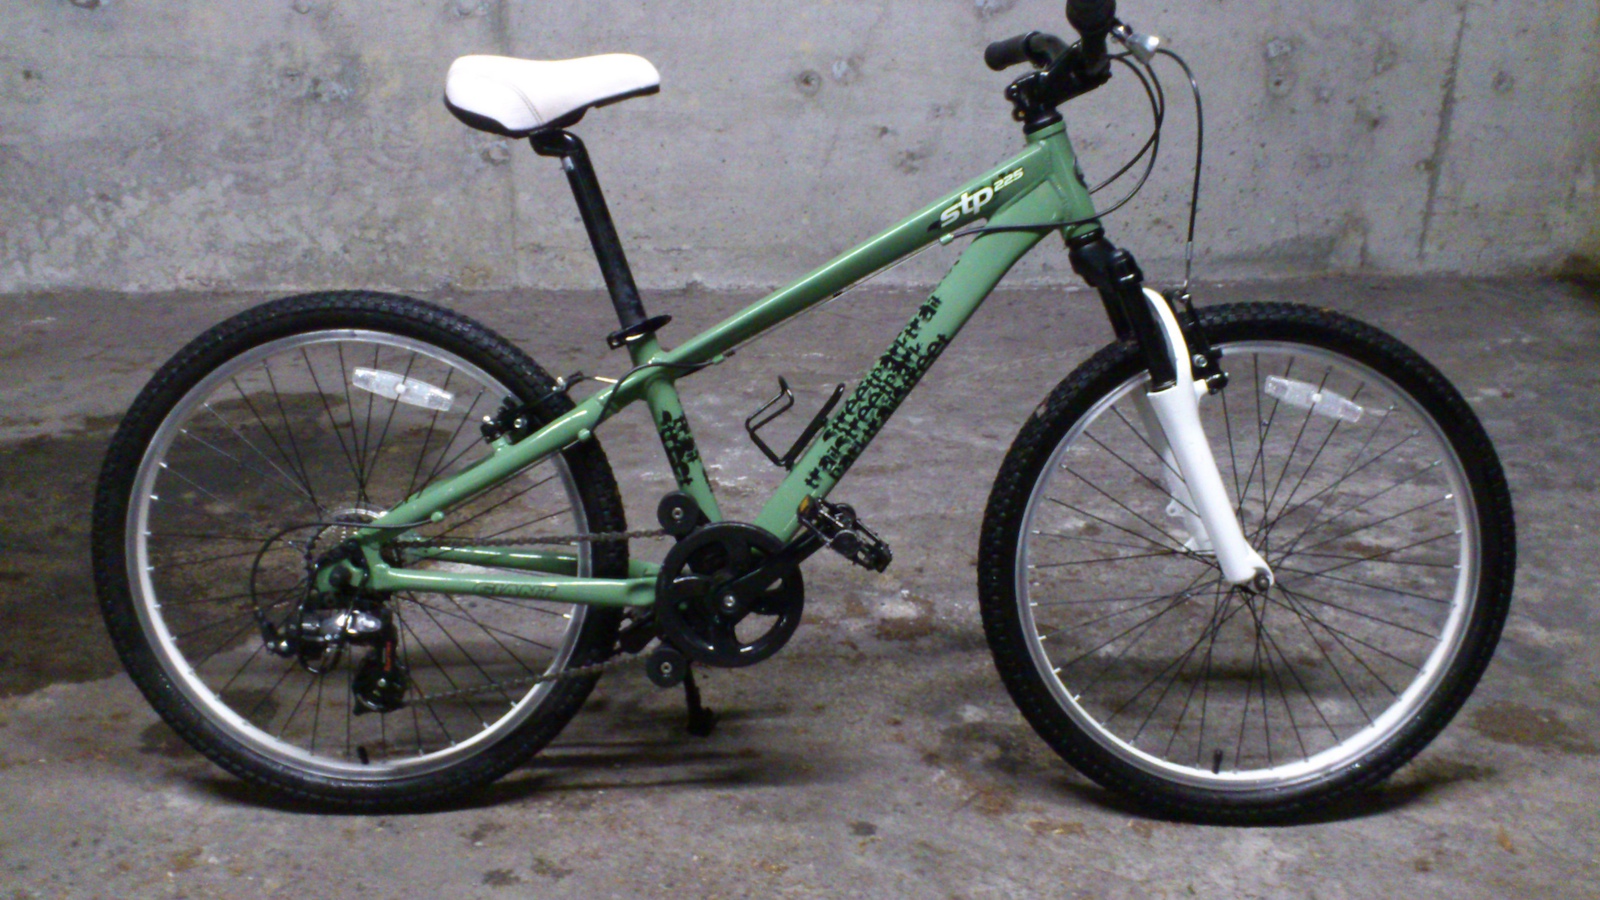 2009 Giant stp225 youth bike – 24” wheels